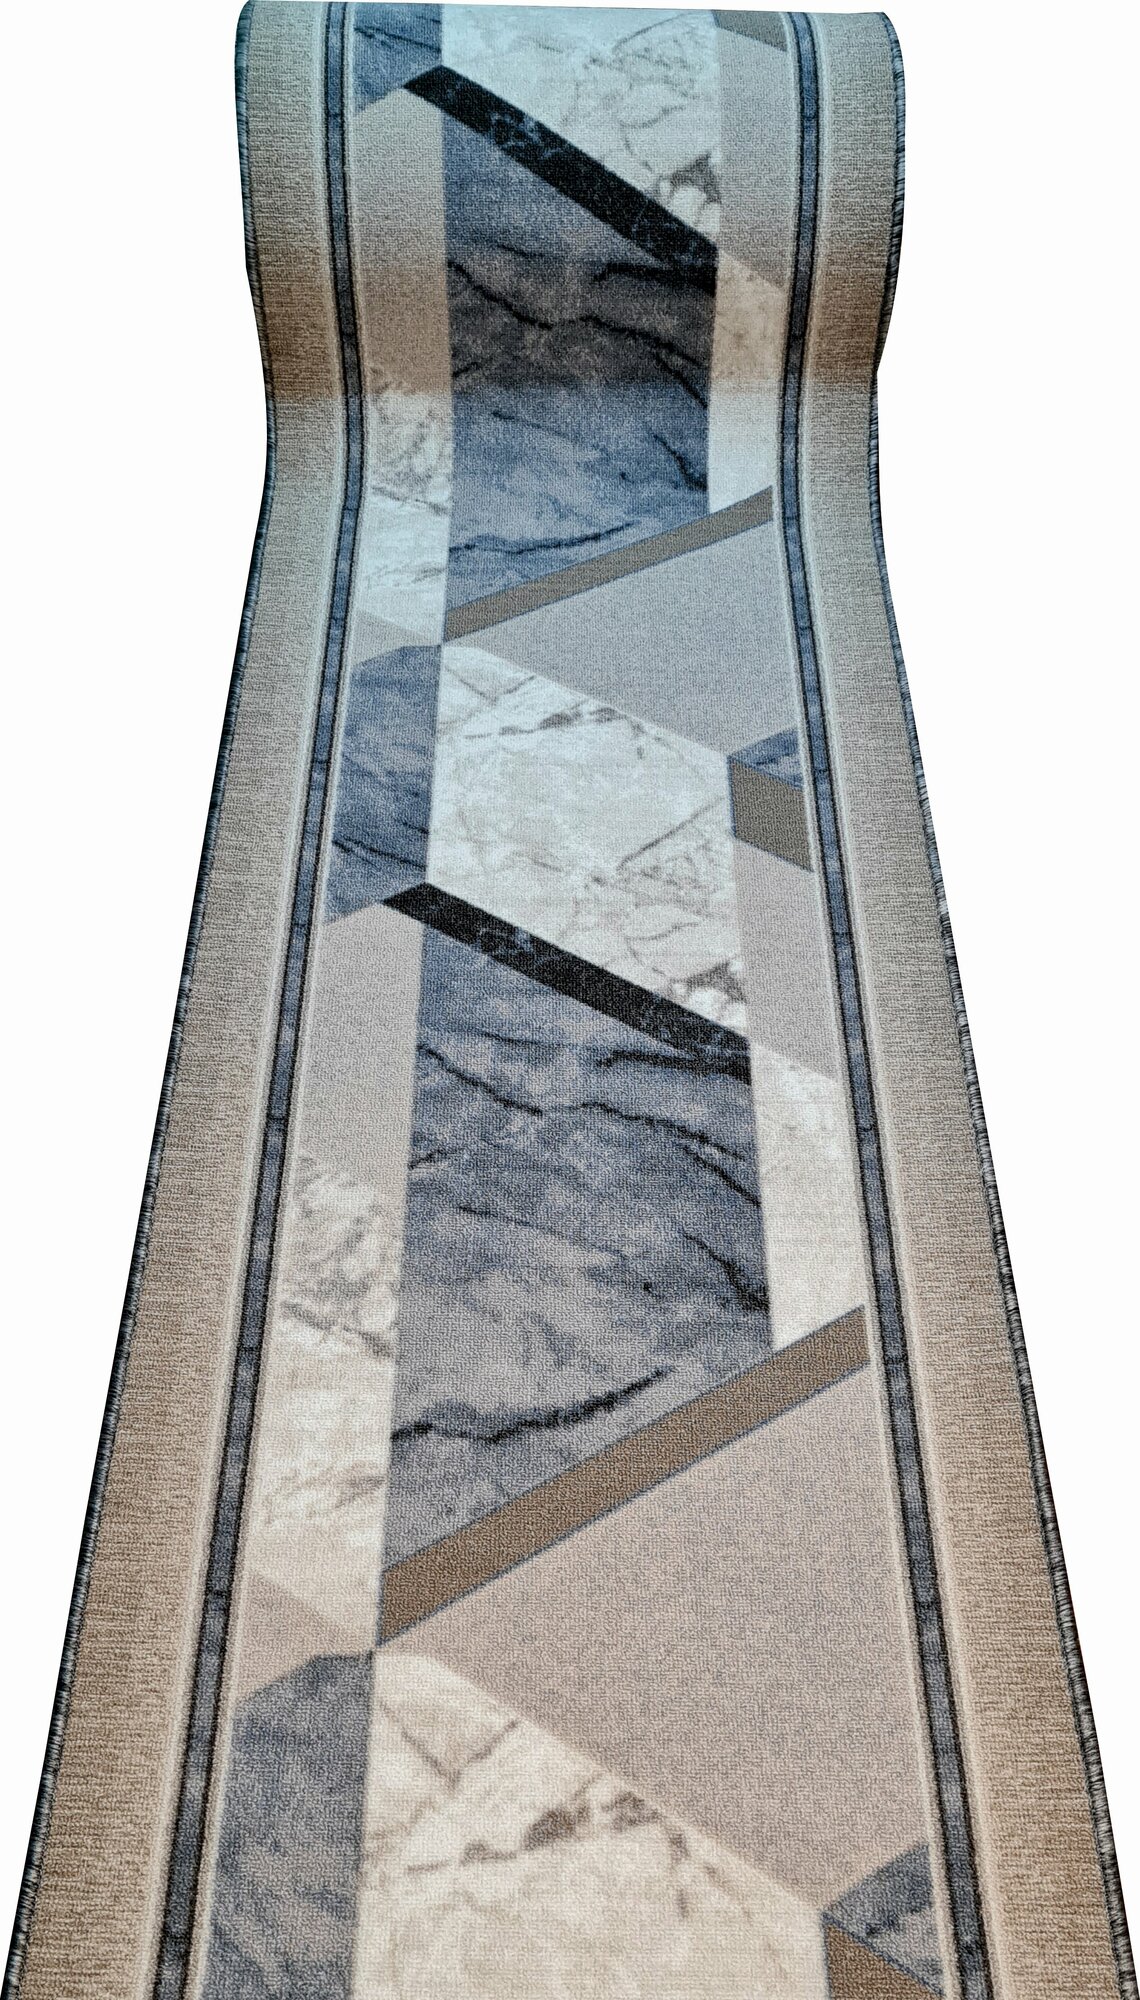 Ковровая дорожка ширина 60 см, длина 100 см / ковровая дорожка на войлочной основе / ковровая дорожка ширина 0,6 м